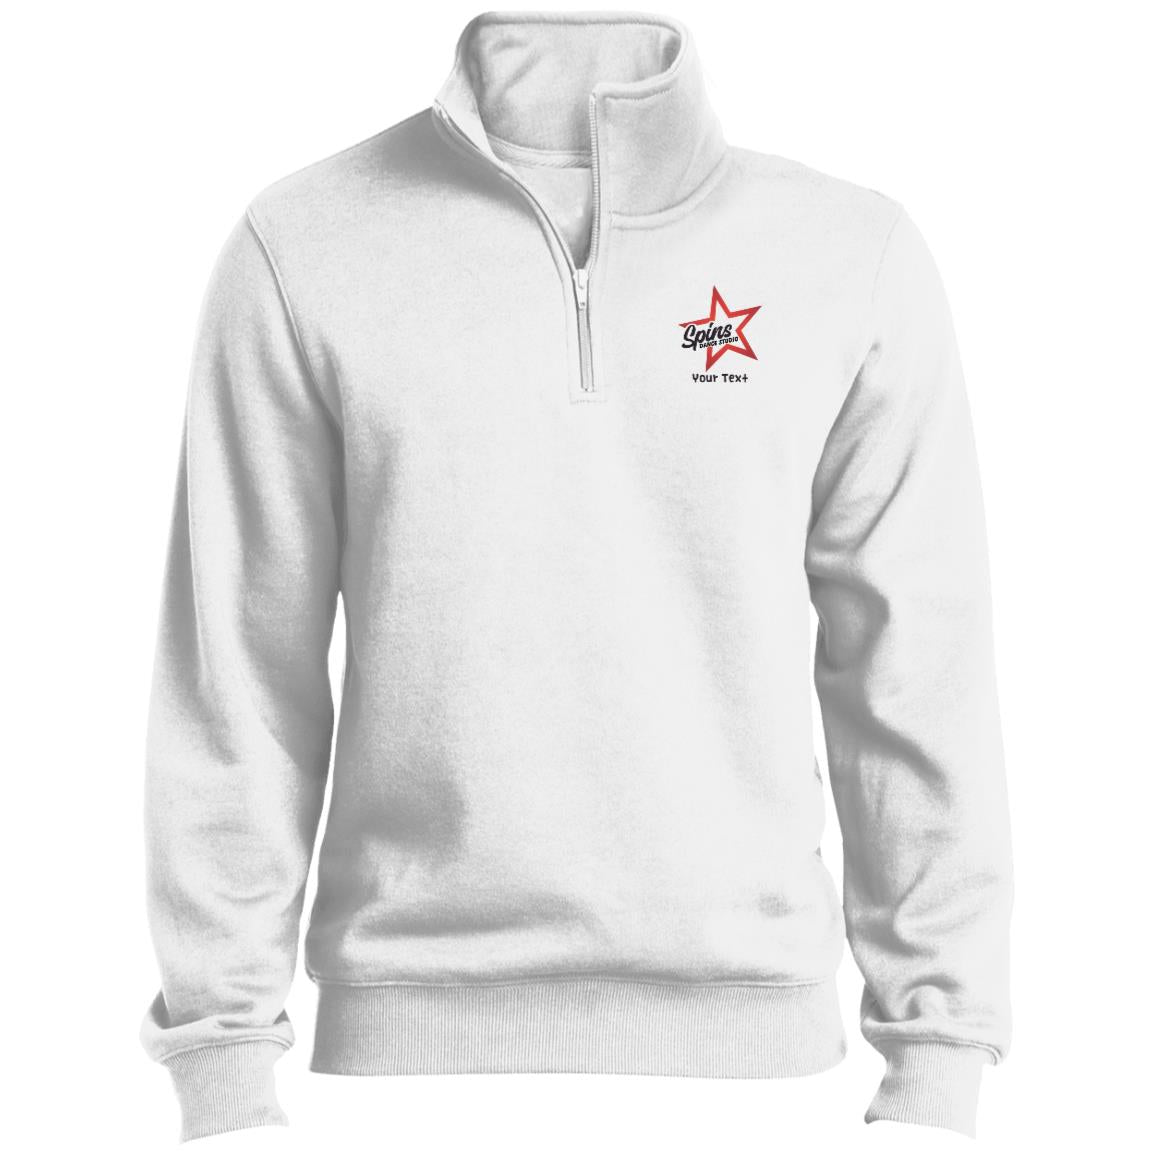 Spins 1/4 Zip Sweatshirt - With Personalization